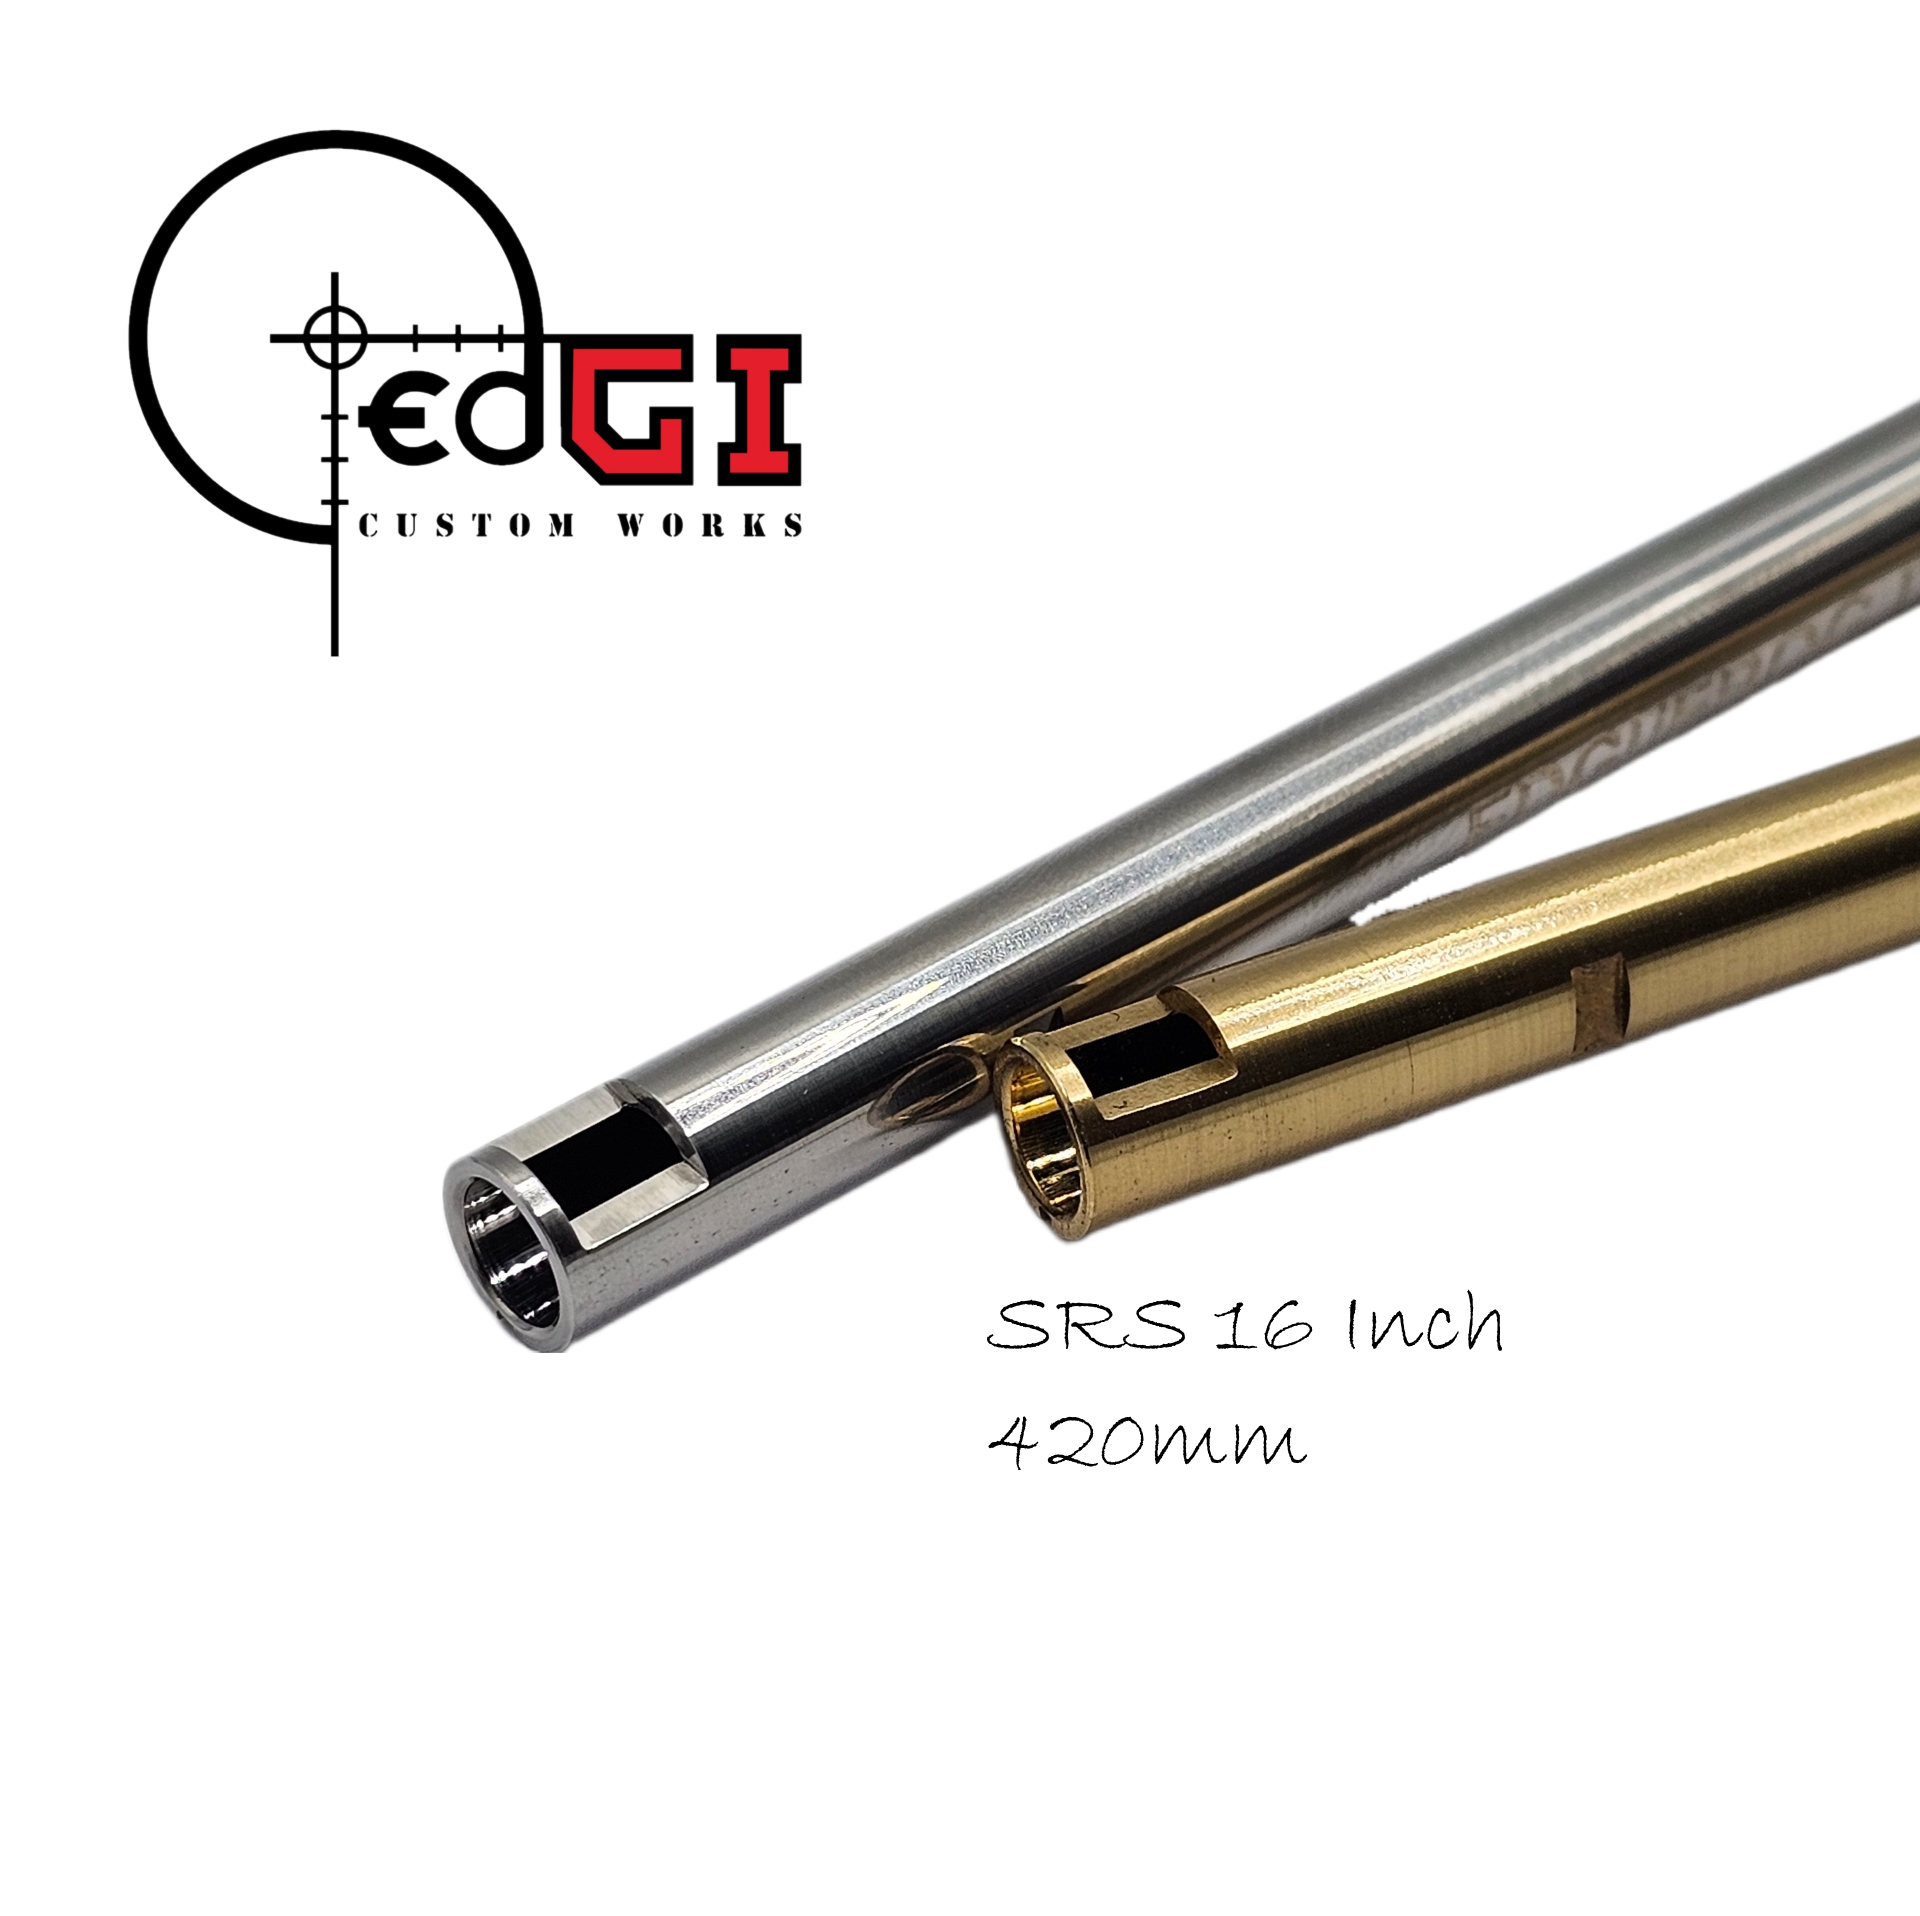 Edgi Custom Works - 420mm AEG Inner Barrel - SRS 16"